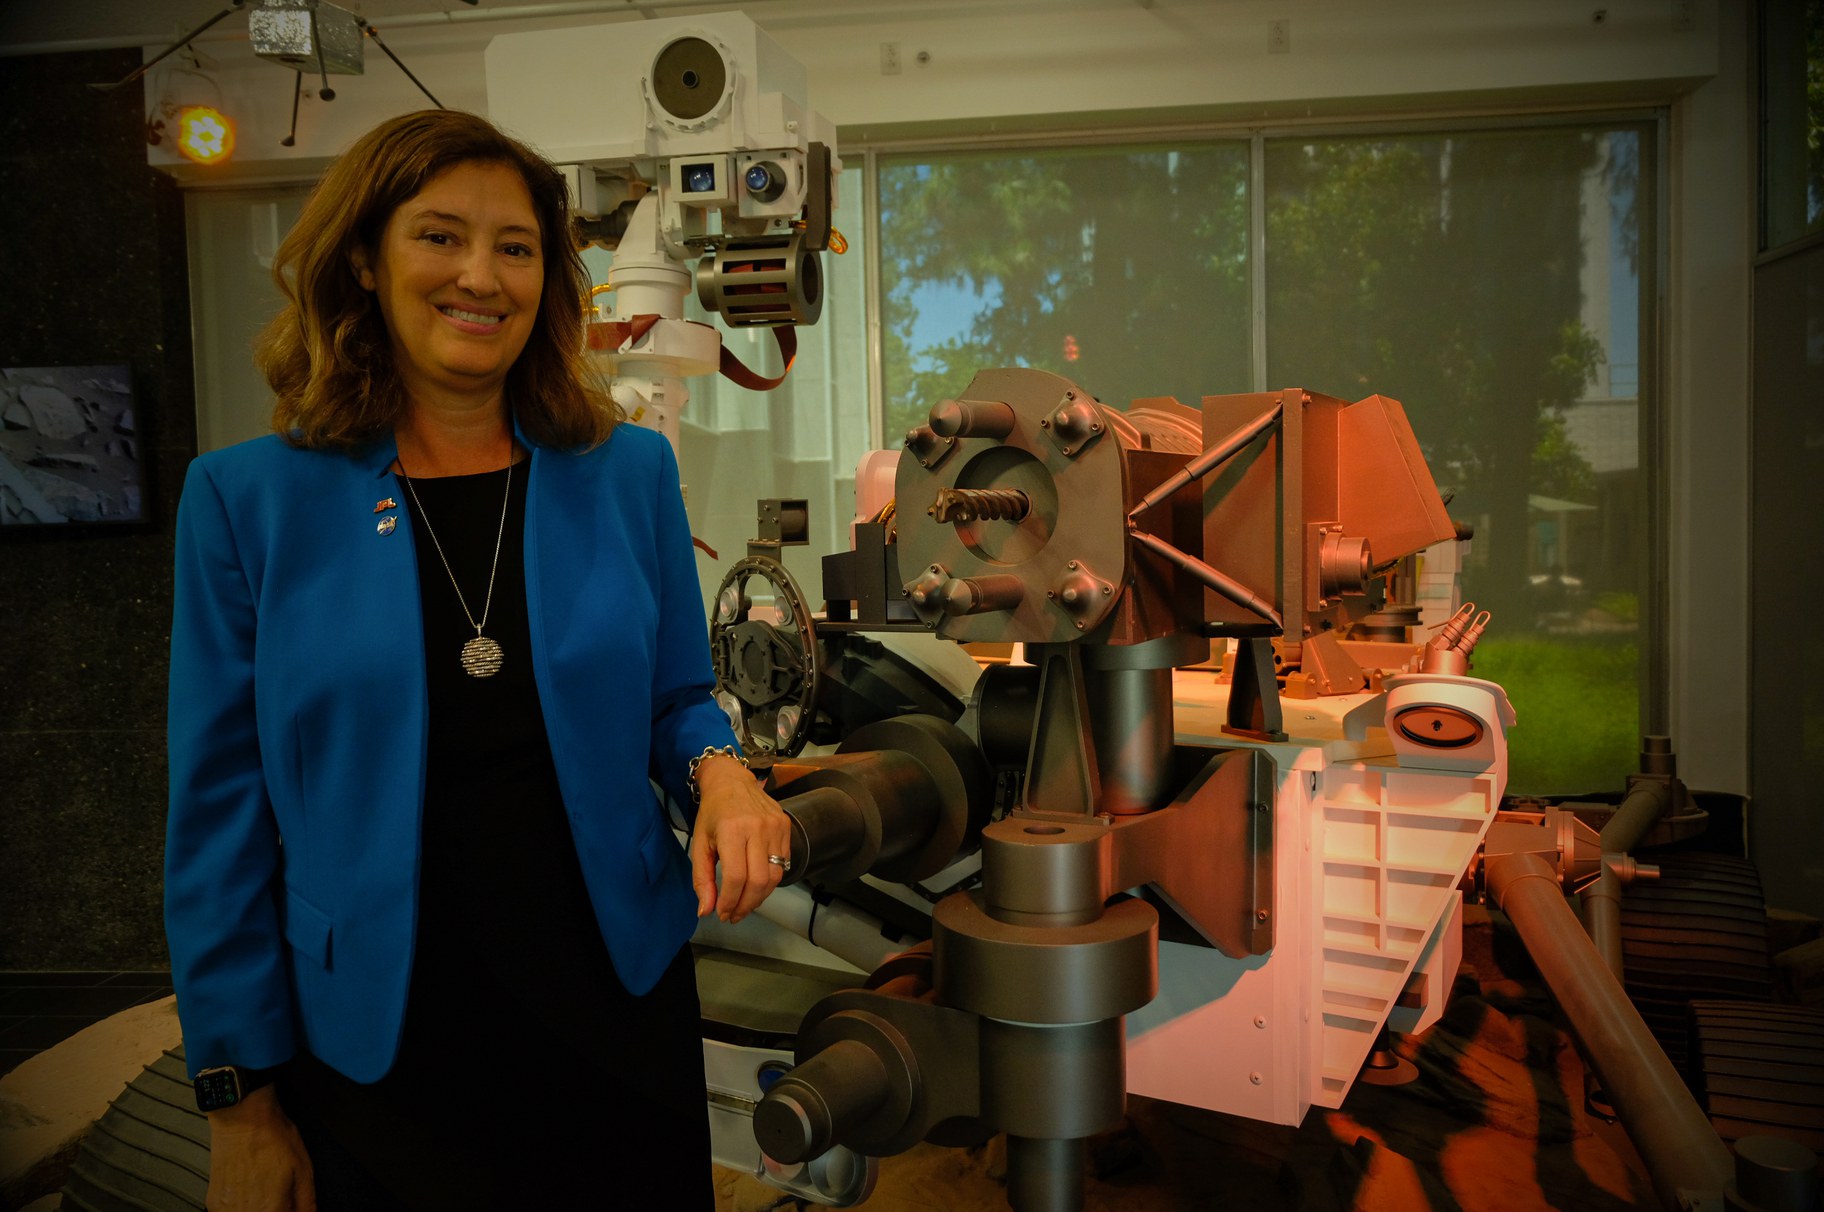 El nuevo director del JPL tiene como objetivo hacer espacio para nuevas voces y encontrar vida más allá de la Tierra